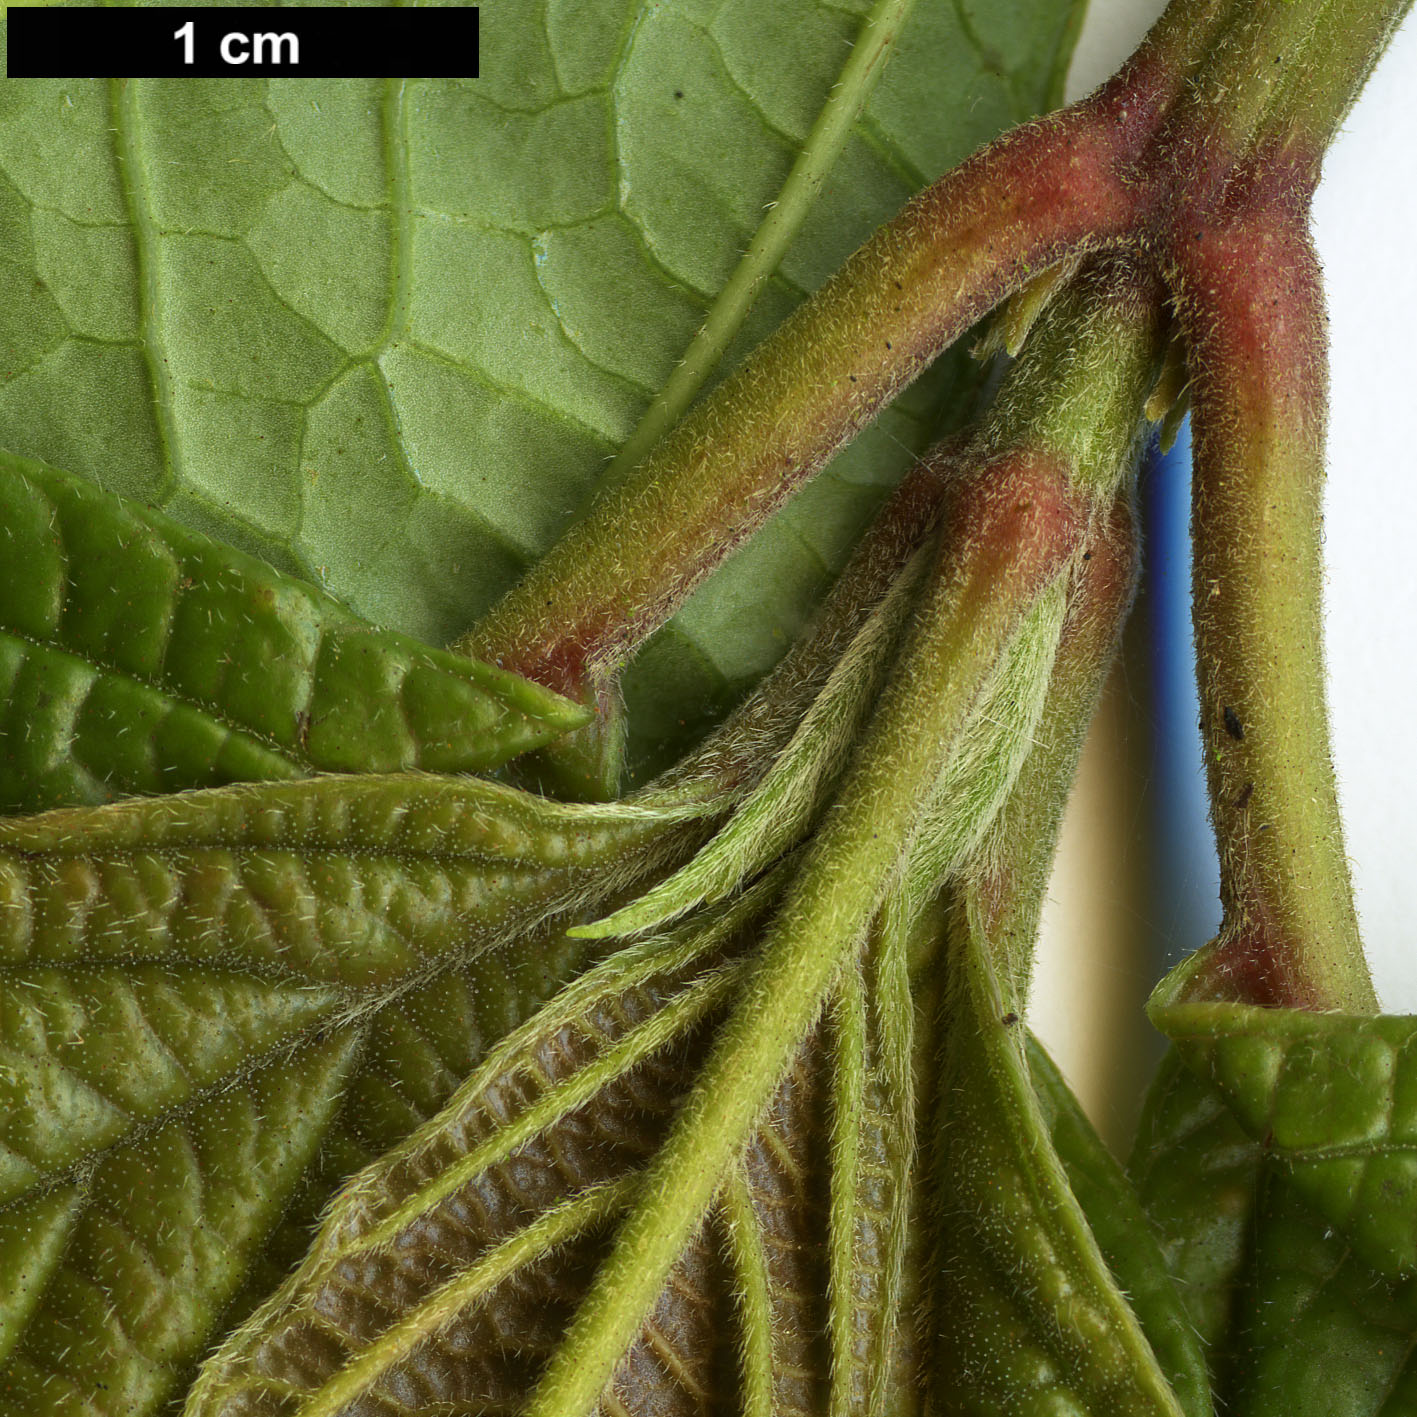 High resolution image: Family: Adoxaceae - Genus: Viburnum - Taxon: ternatum